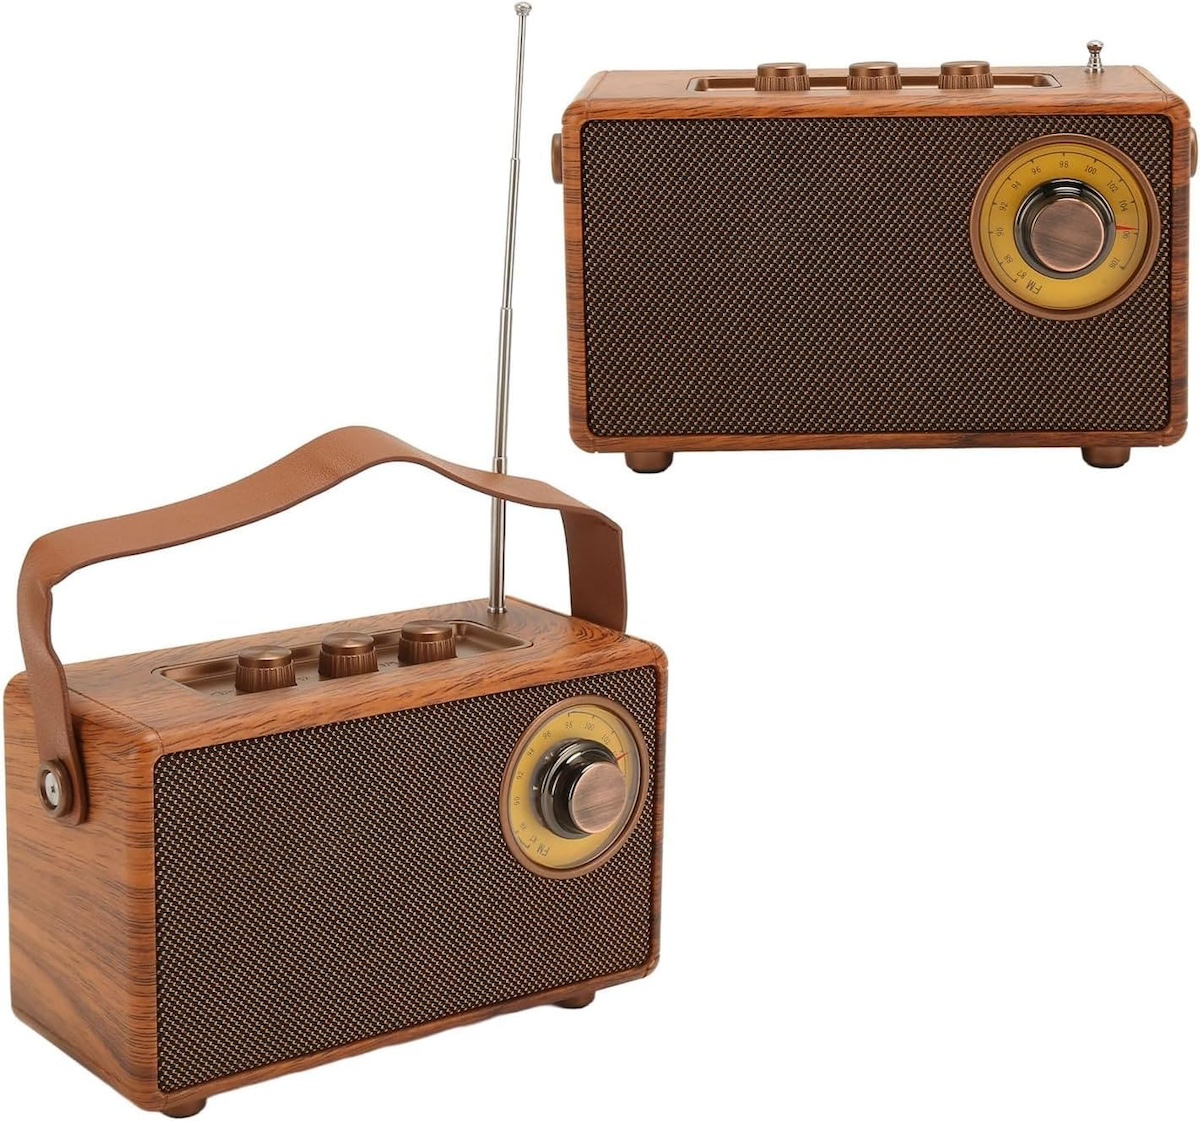 ραδιόφωνο μίνι μικρό ρετρό vintage ξύλινο στυλ